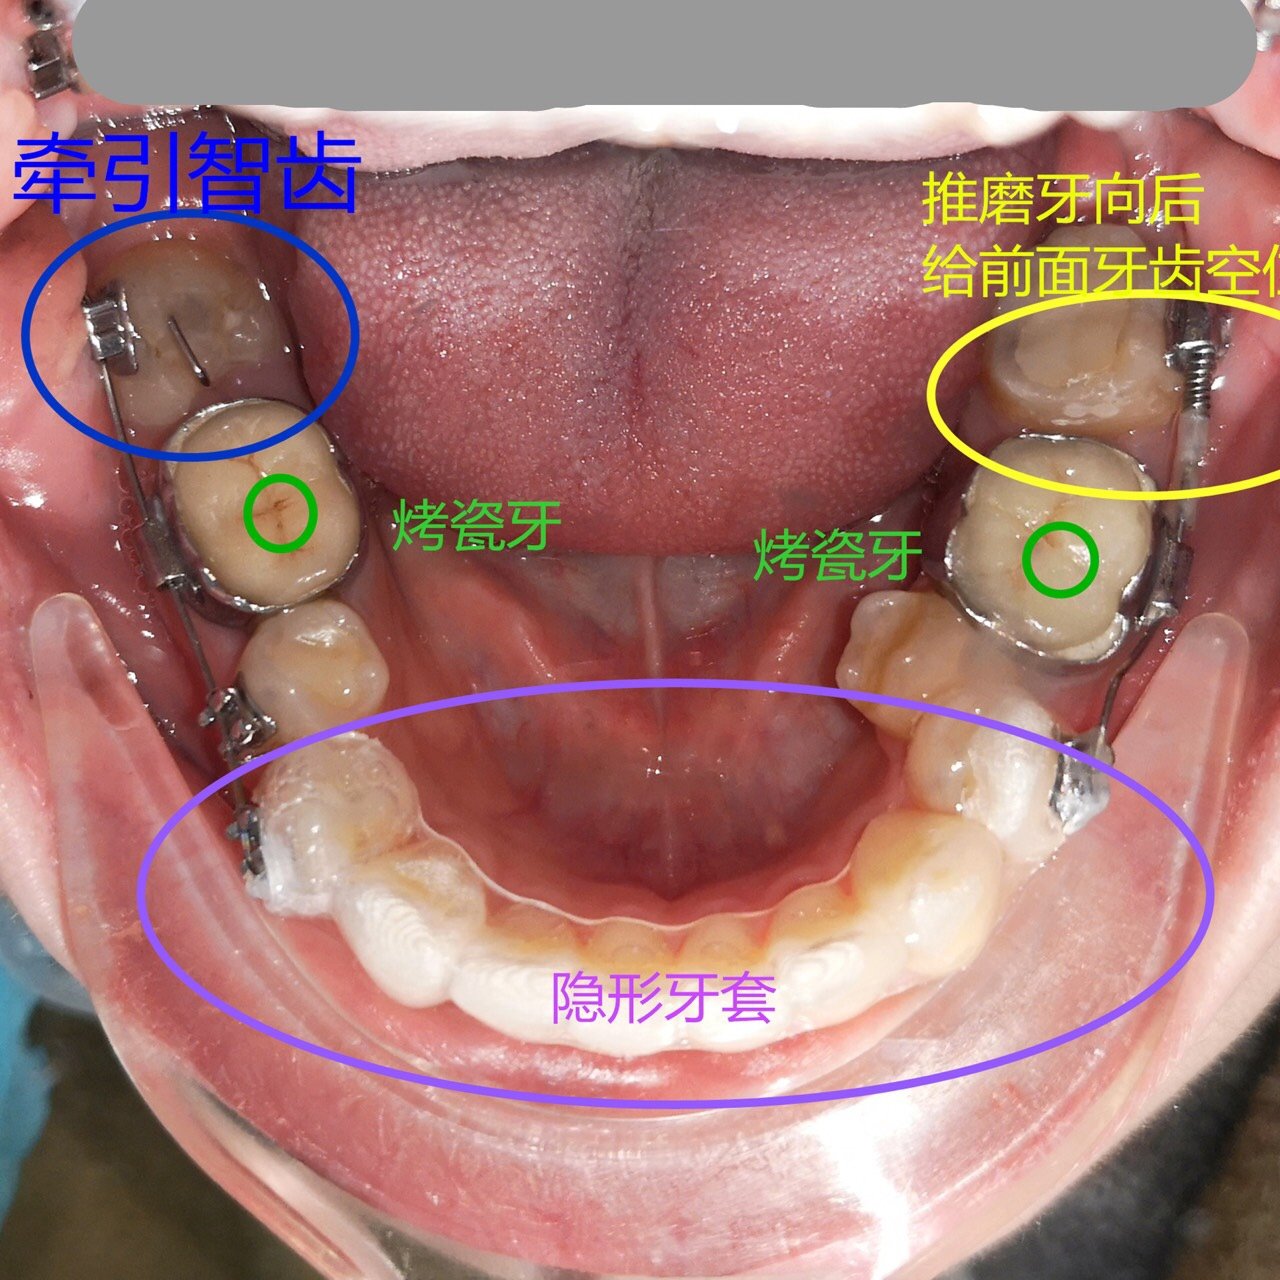 花式正畸:多技能结合治疗的一副下排牙.